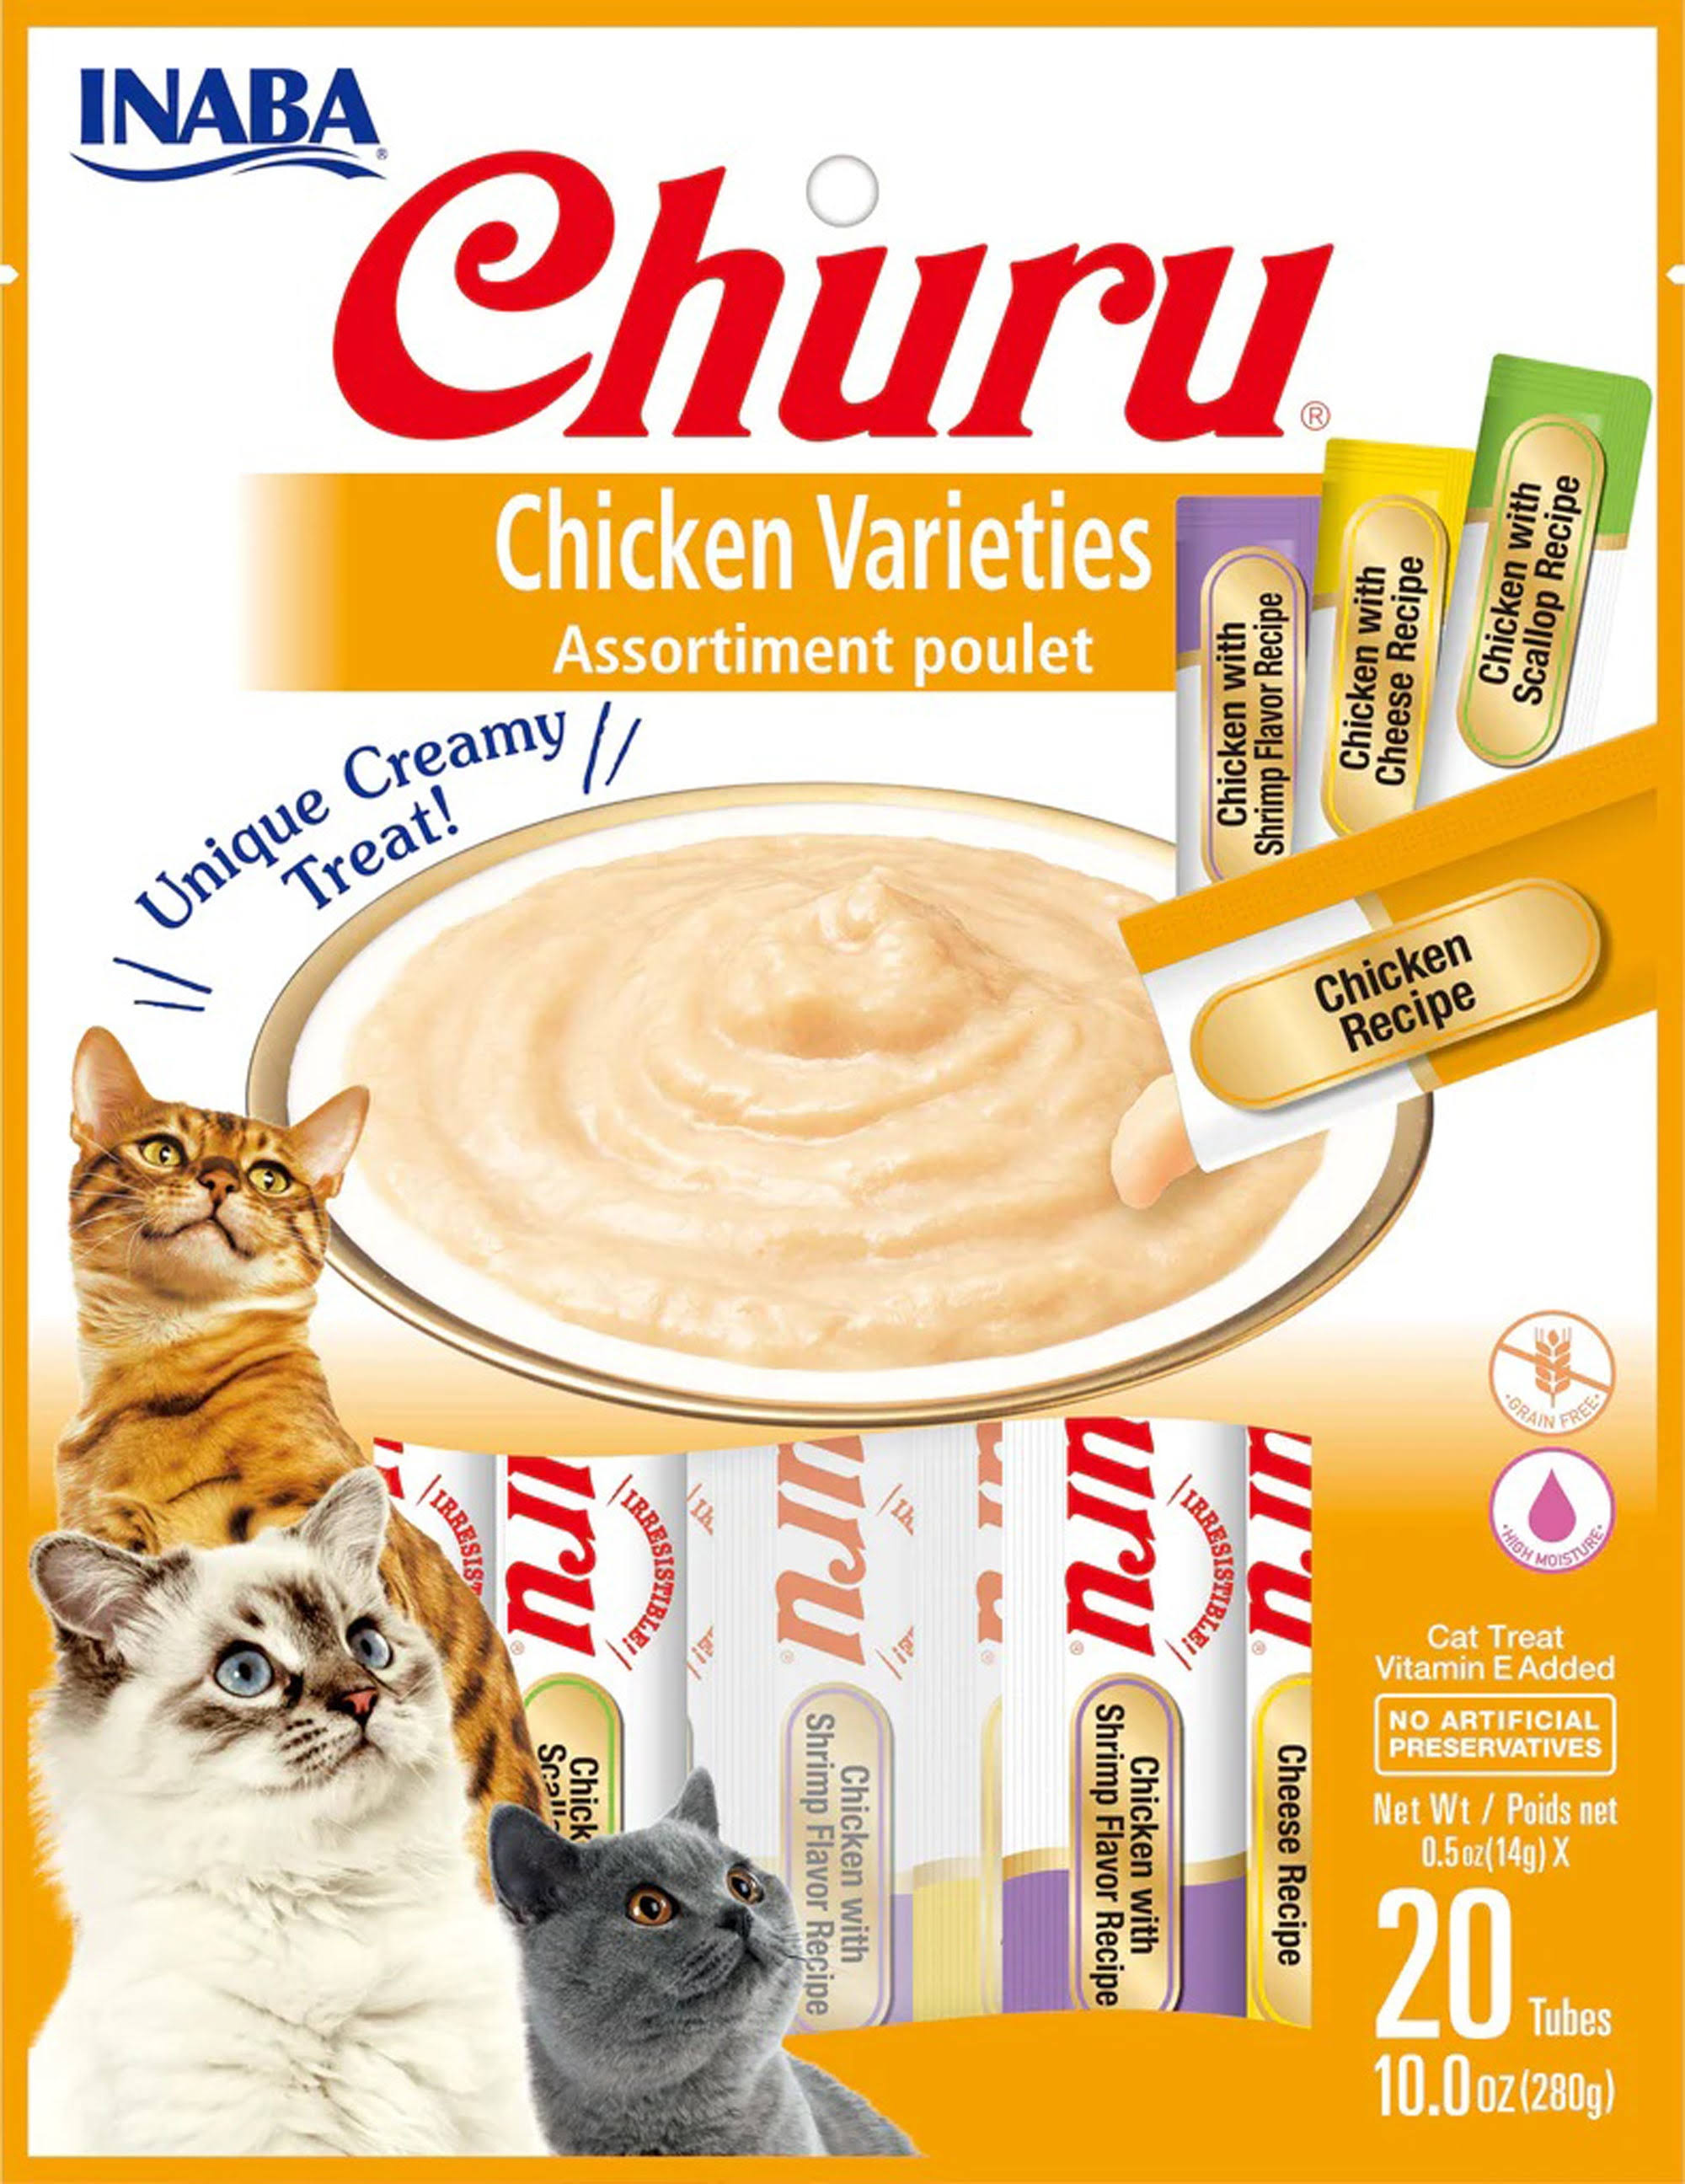 Inaba Churu Creamy Puree Cat Treats - Chicken Varieties, 20 pack